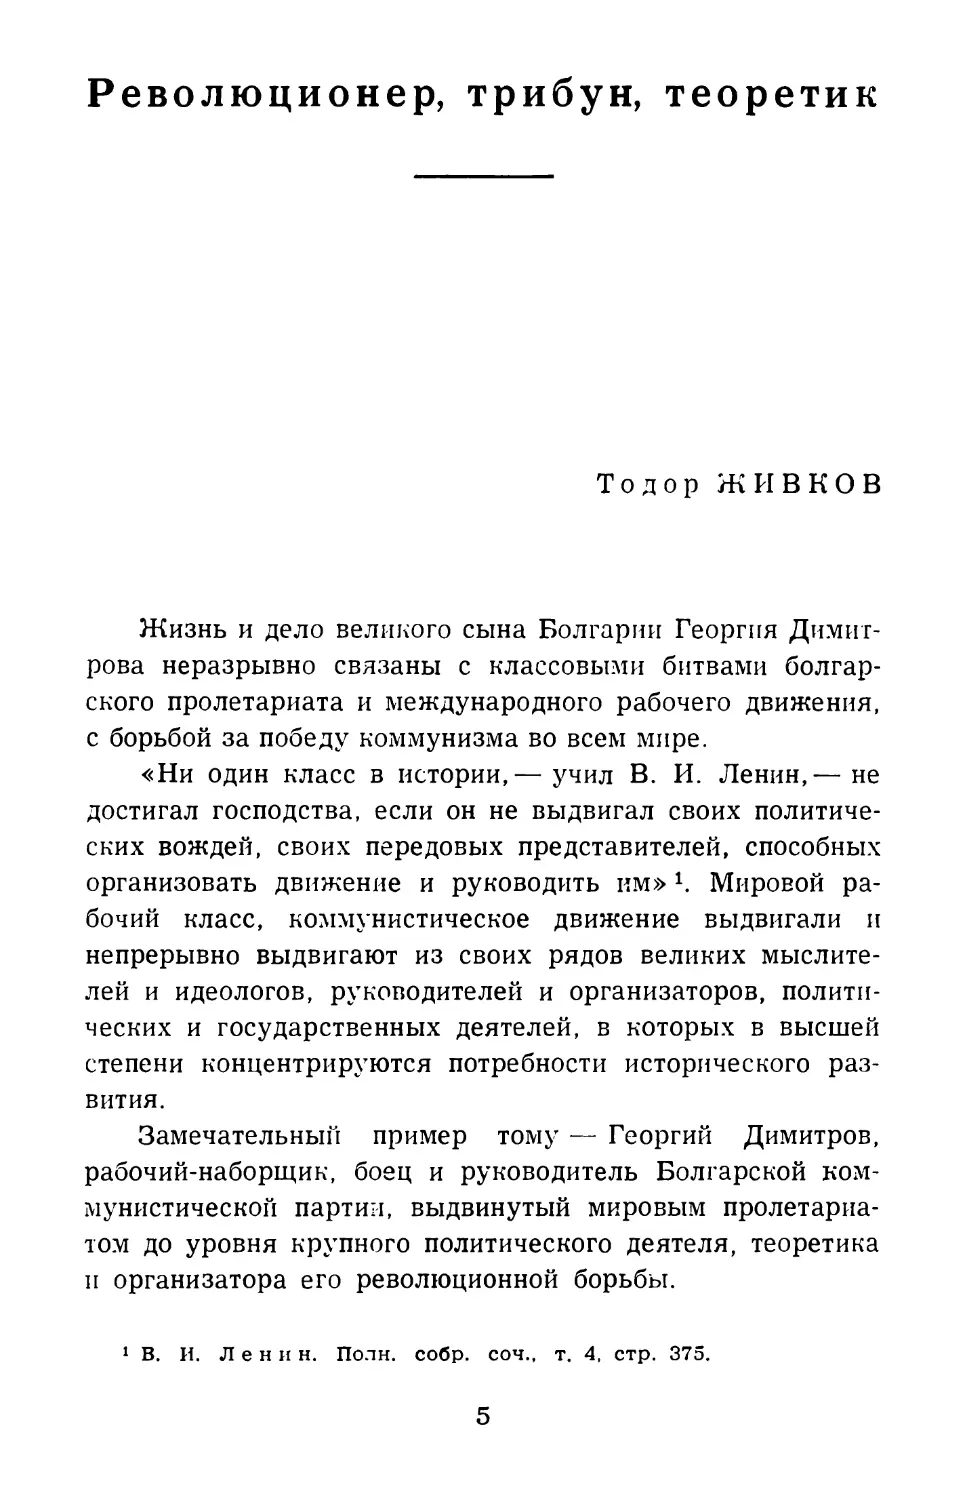 Тодор Живков. Революционер, трибун, теоретик